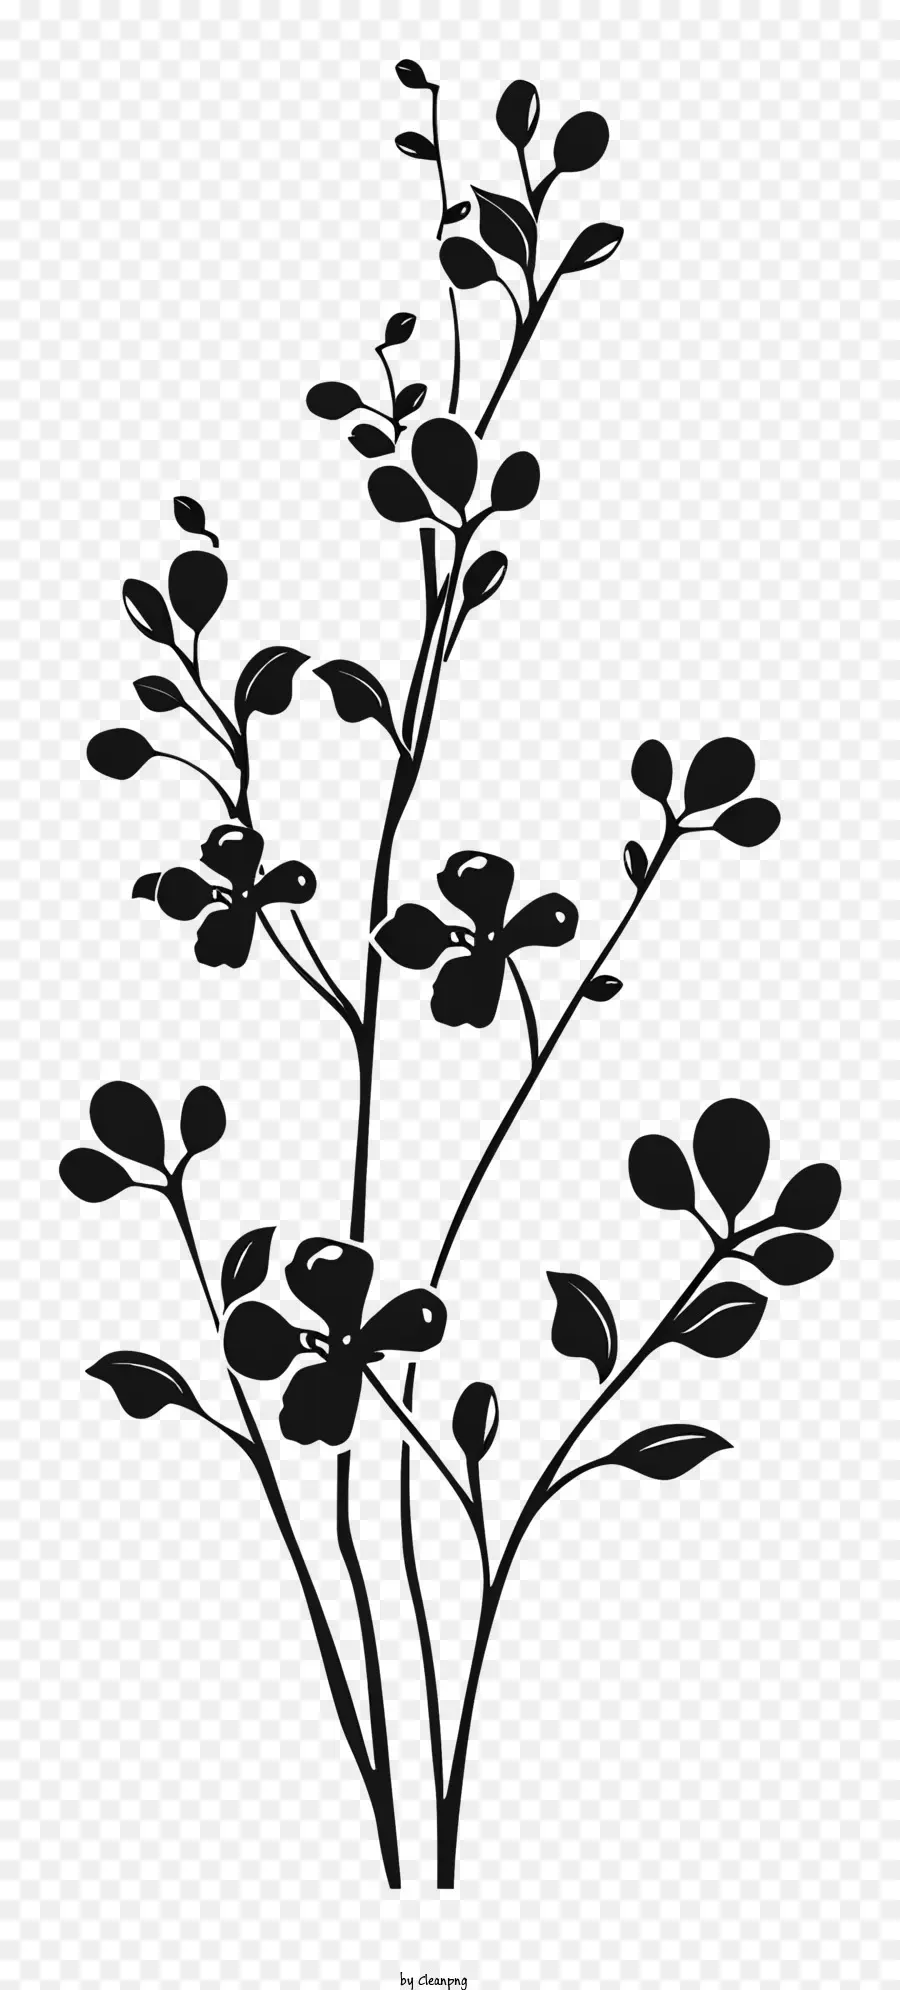 fiore silhouette - Silhouette ramo con foglie in bianco e nero